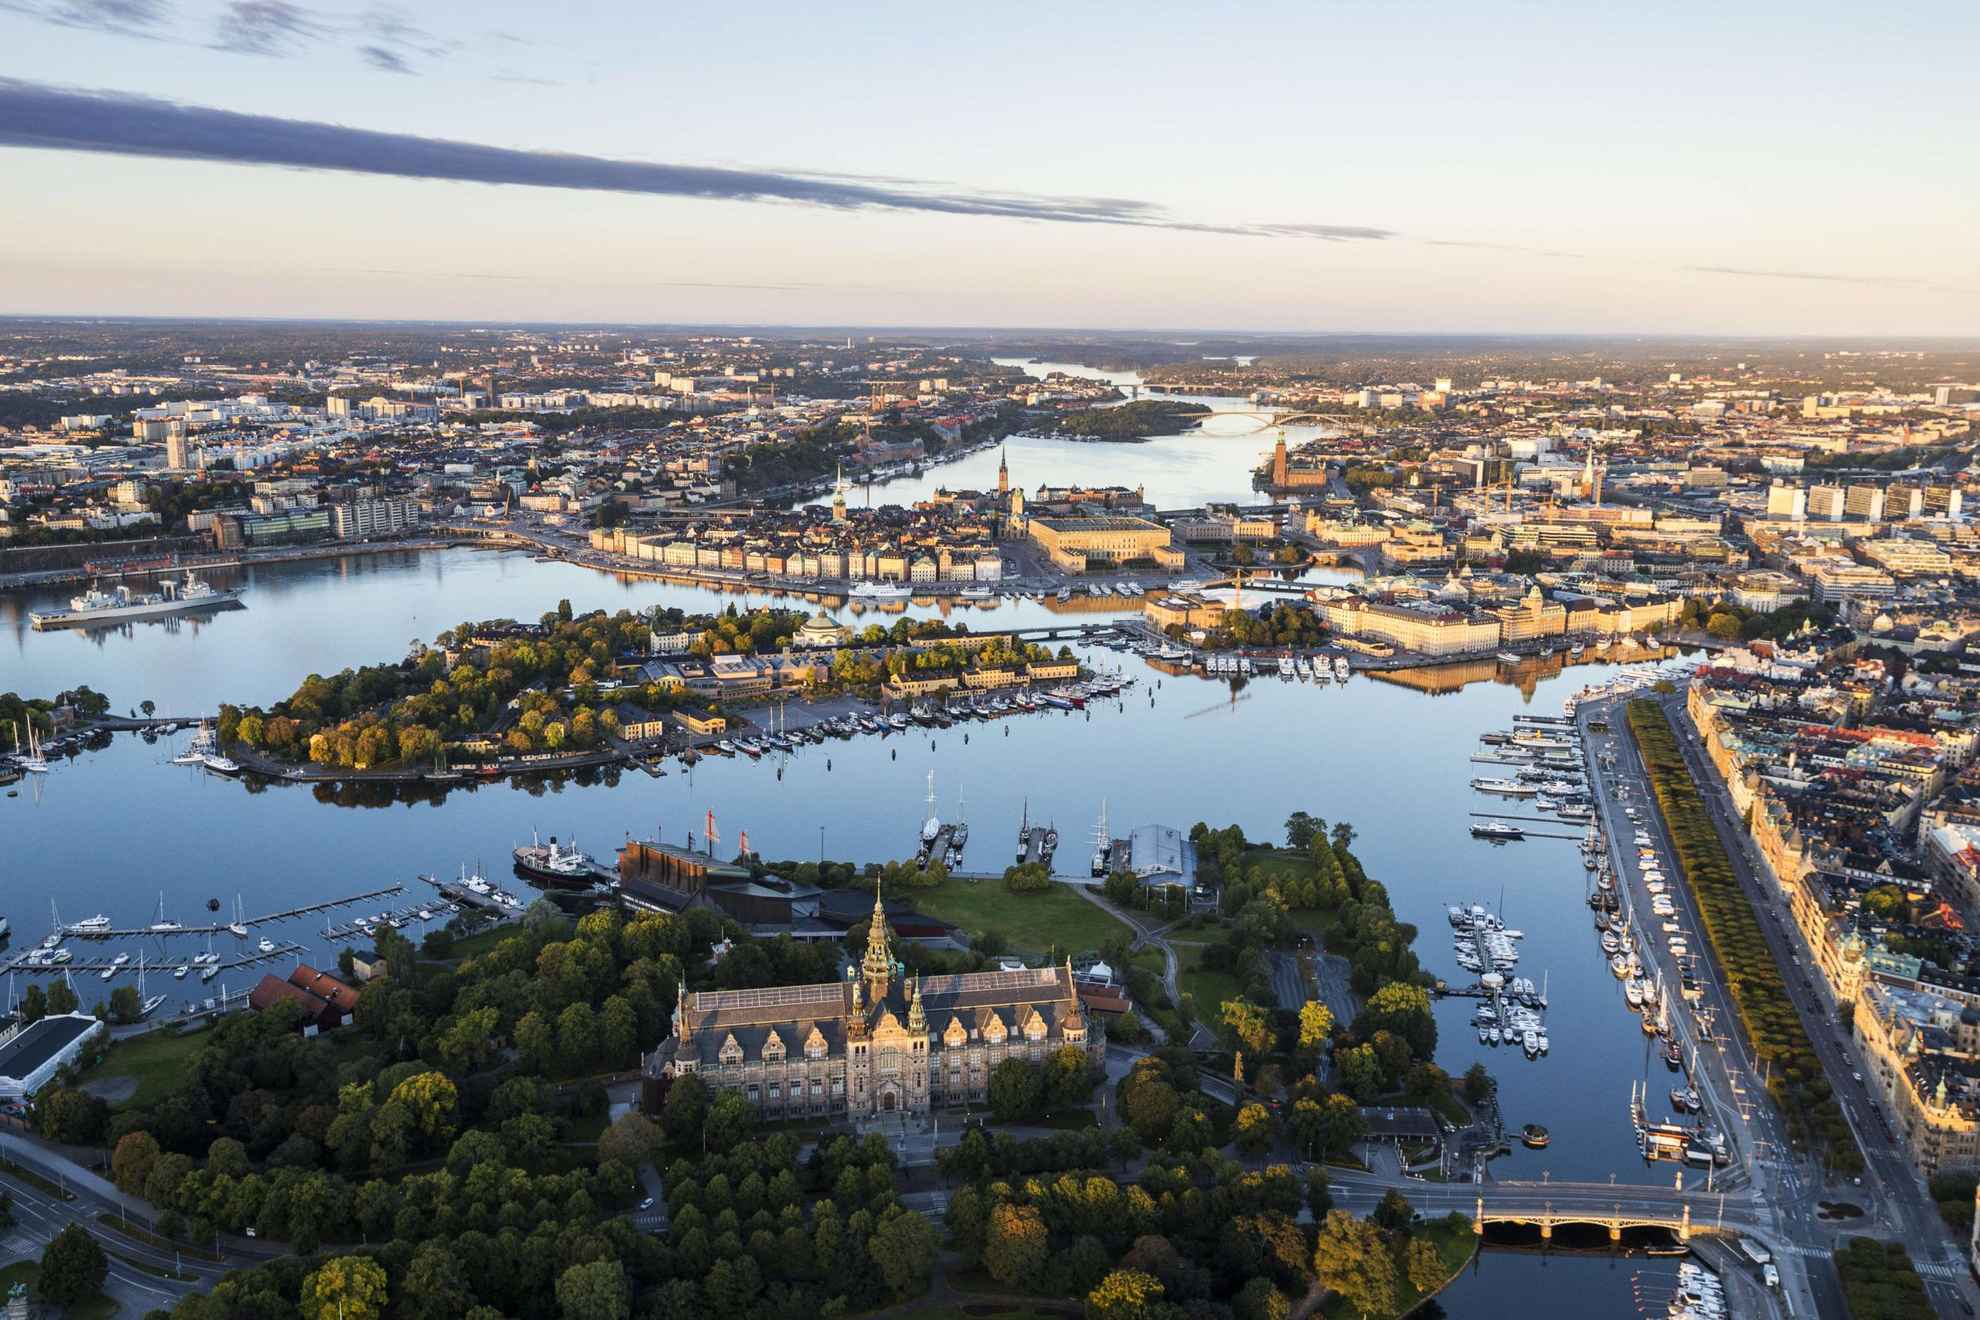 Luchtfoto van water rondom het eiland Djurgården en de boten langs de kades.